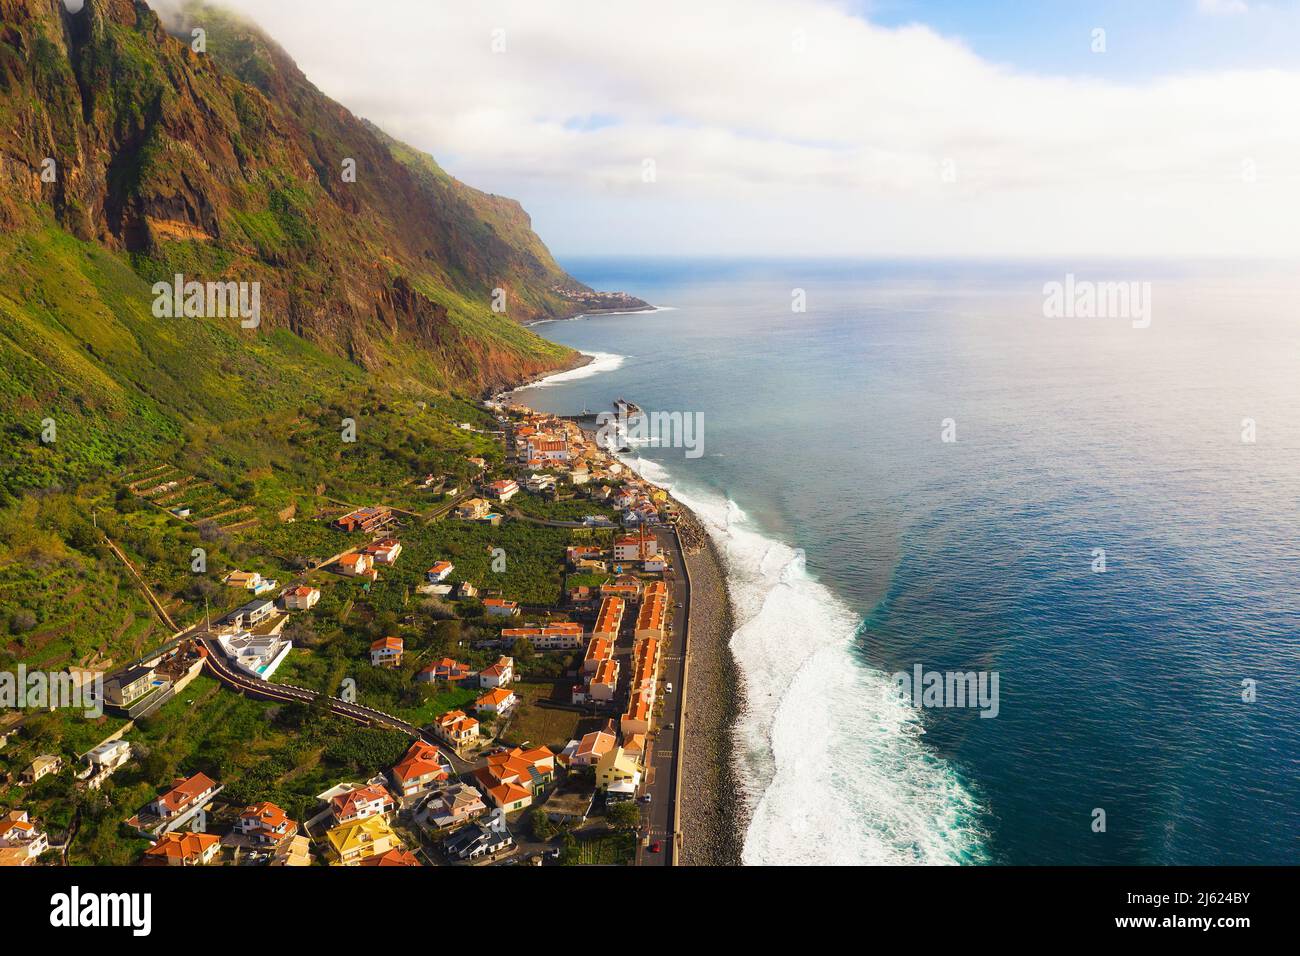 Veduta aerea del villaggio costiero di Paul do Mar nelle Isole Madeira, Portogallo Foto Stock